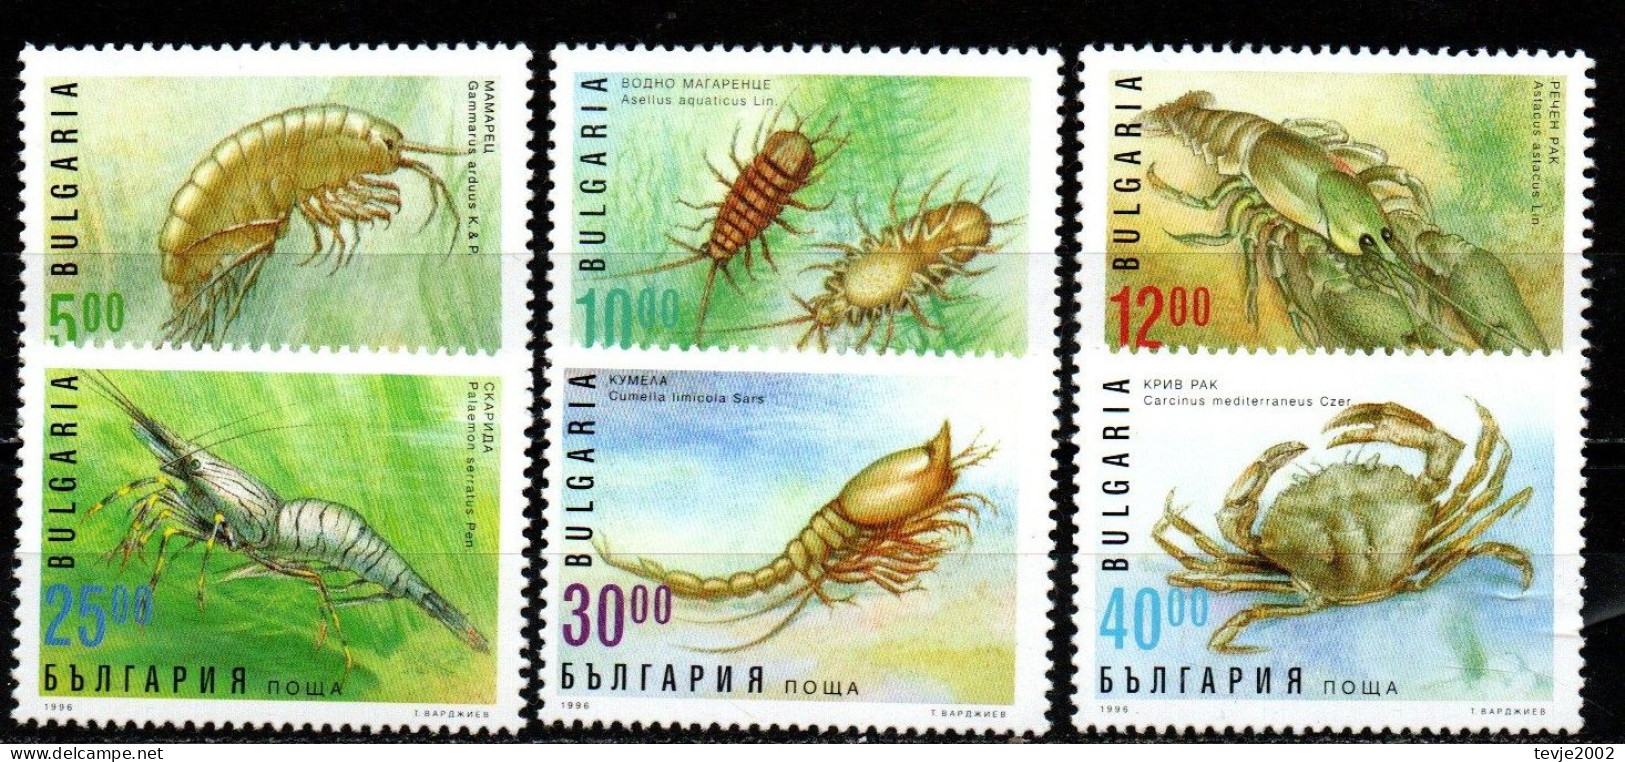 Bulgarien 1996 - Mi.Nr. 4238 - 4243 - Postfrisch MNH - Tiere Animals Krabben Crabs - Crostacei